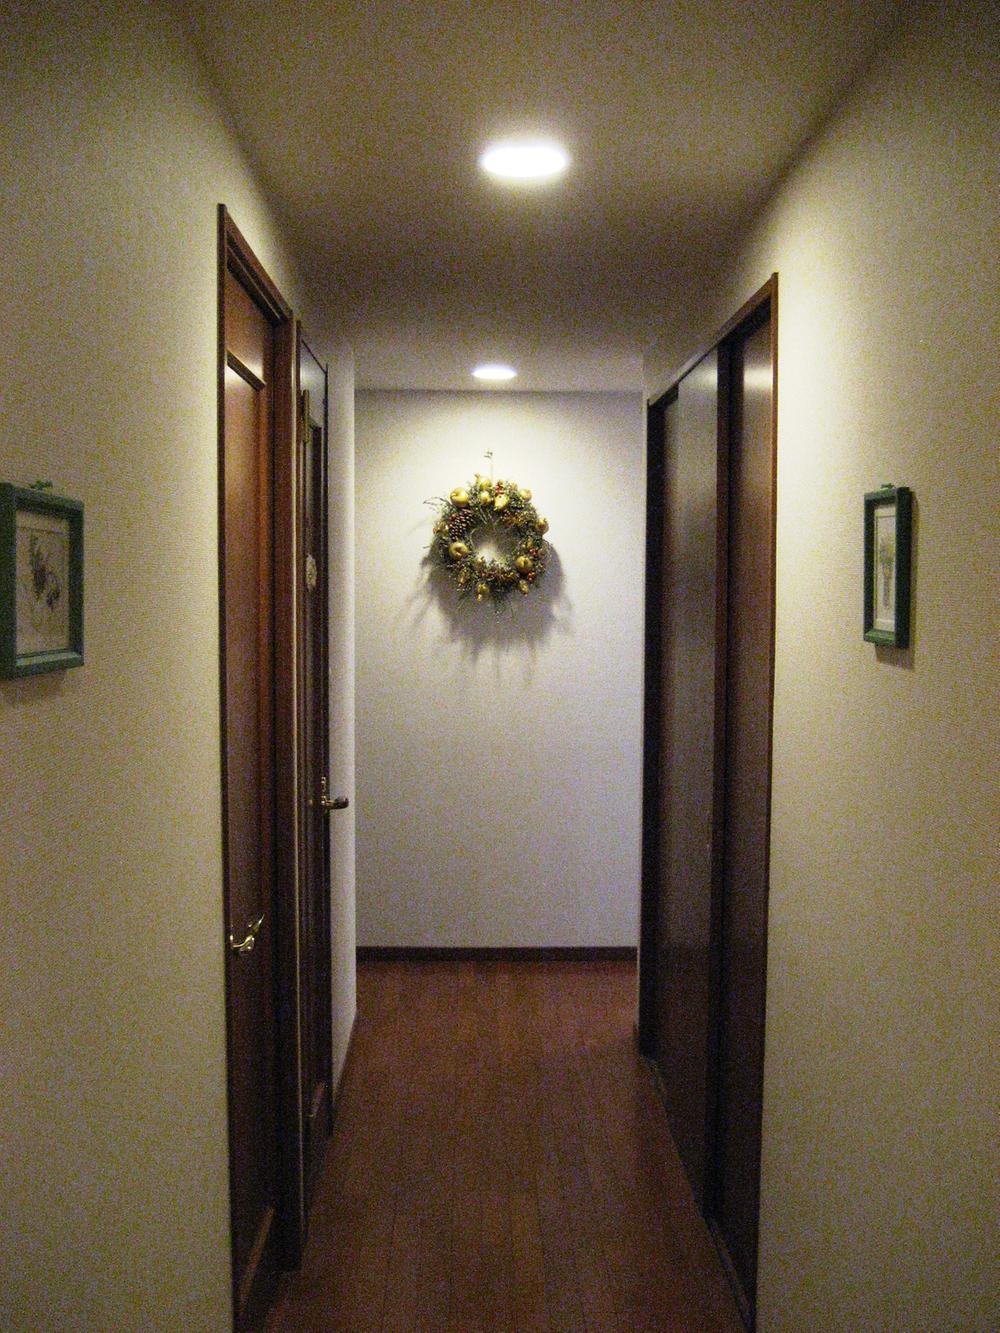 Other introspection. Indoor corridor